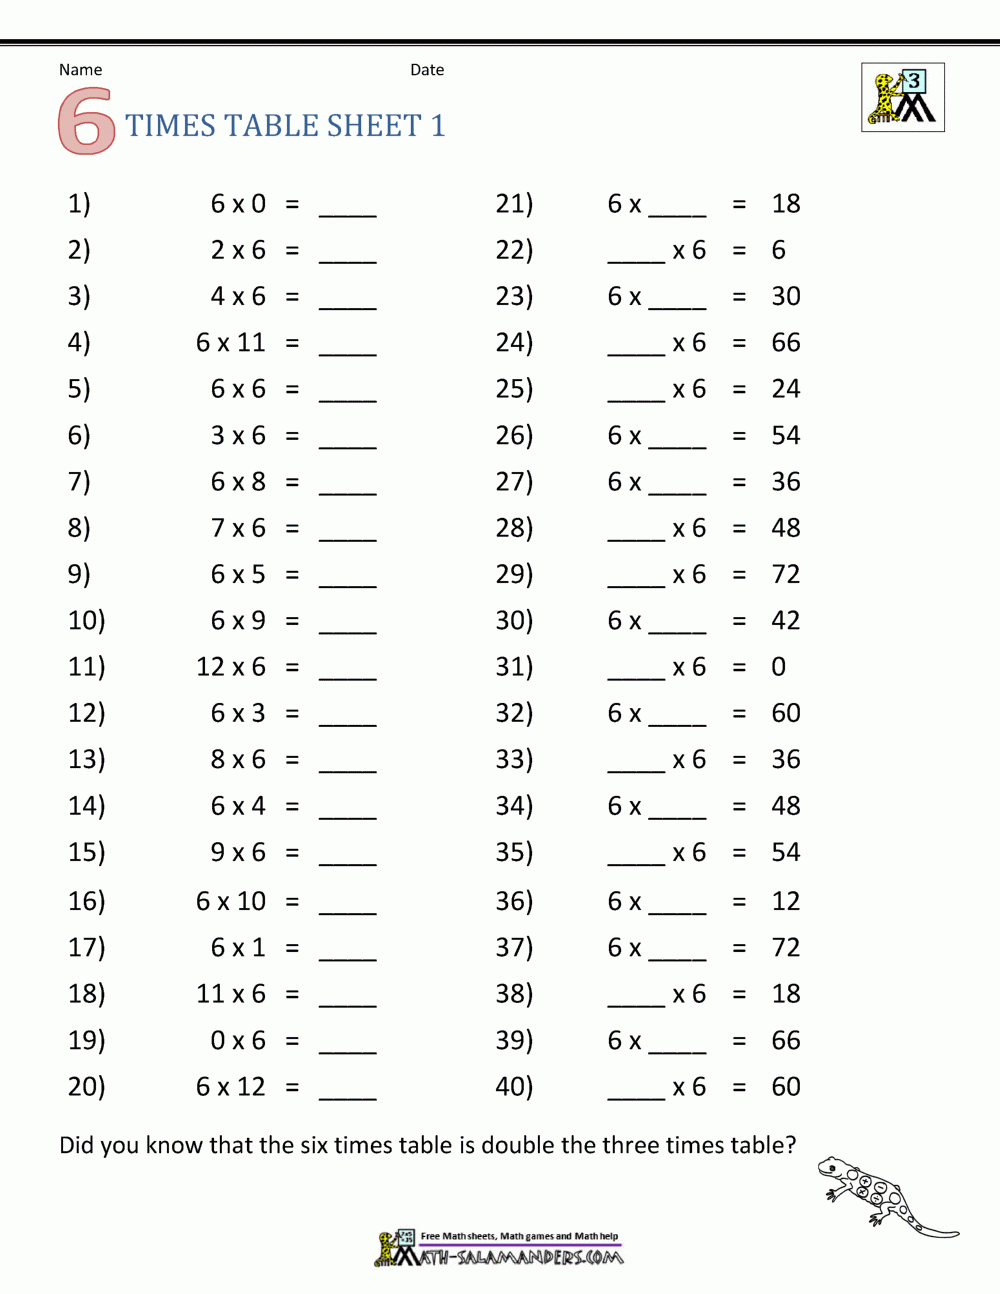 Multiplication Drill Sheets 3Rd Grade within Multiplication Worksheets Random